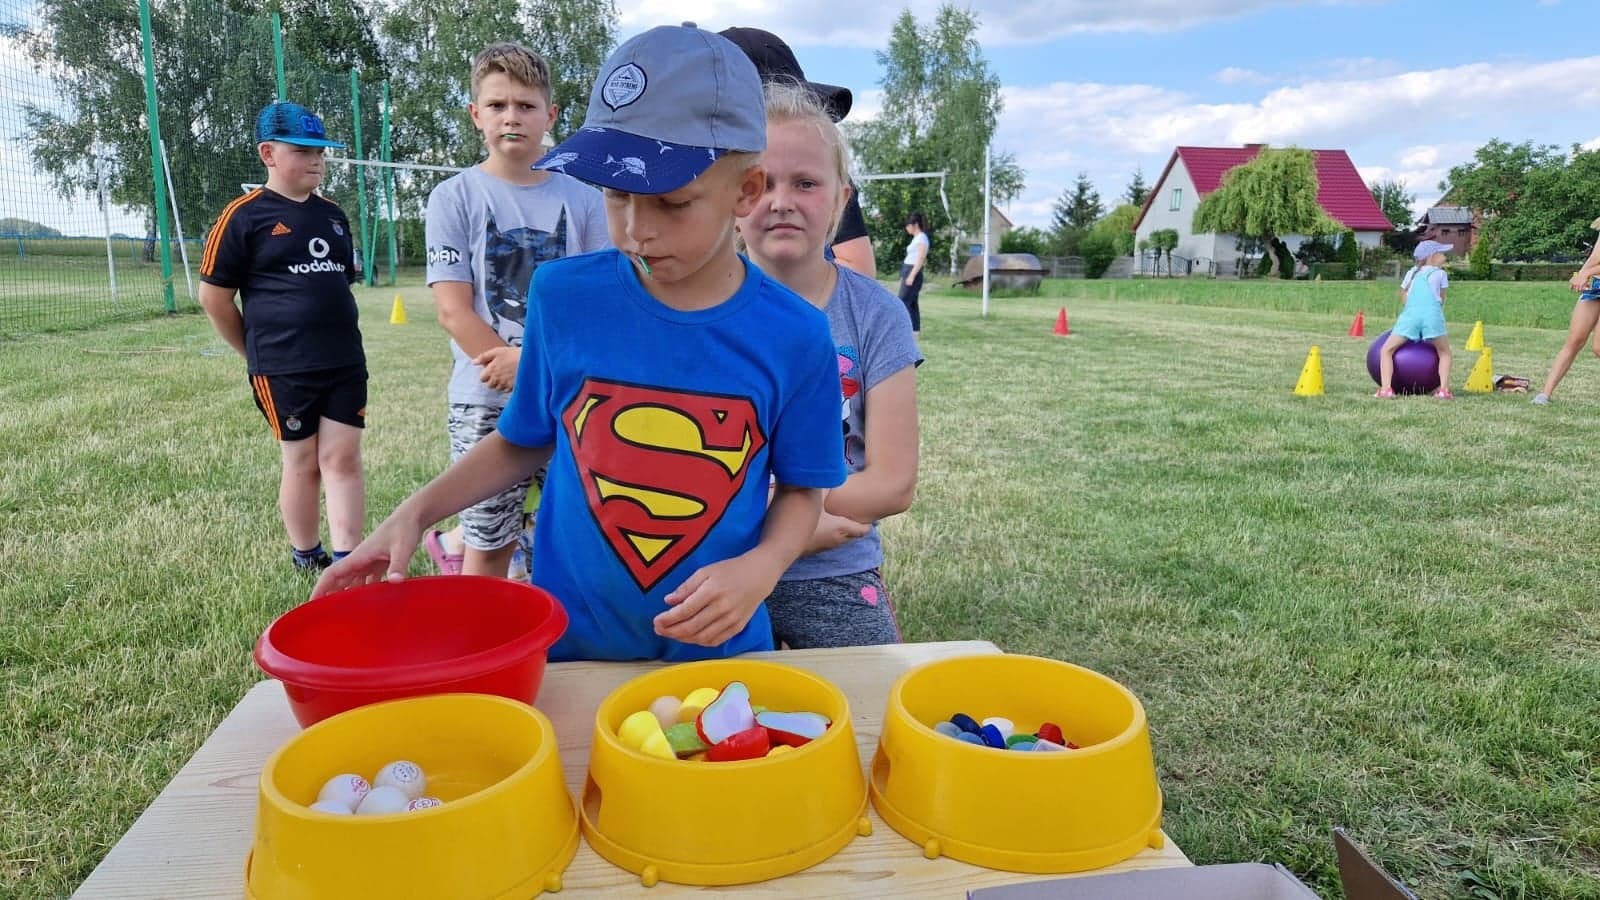 chłopiec w niebieskiej koszulce ze znaczkiem supermena segreguje owoce plastikowe, nakrętki i piłeczki do ping ponga do żółtych 3 misek